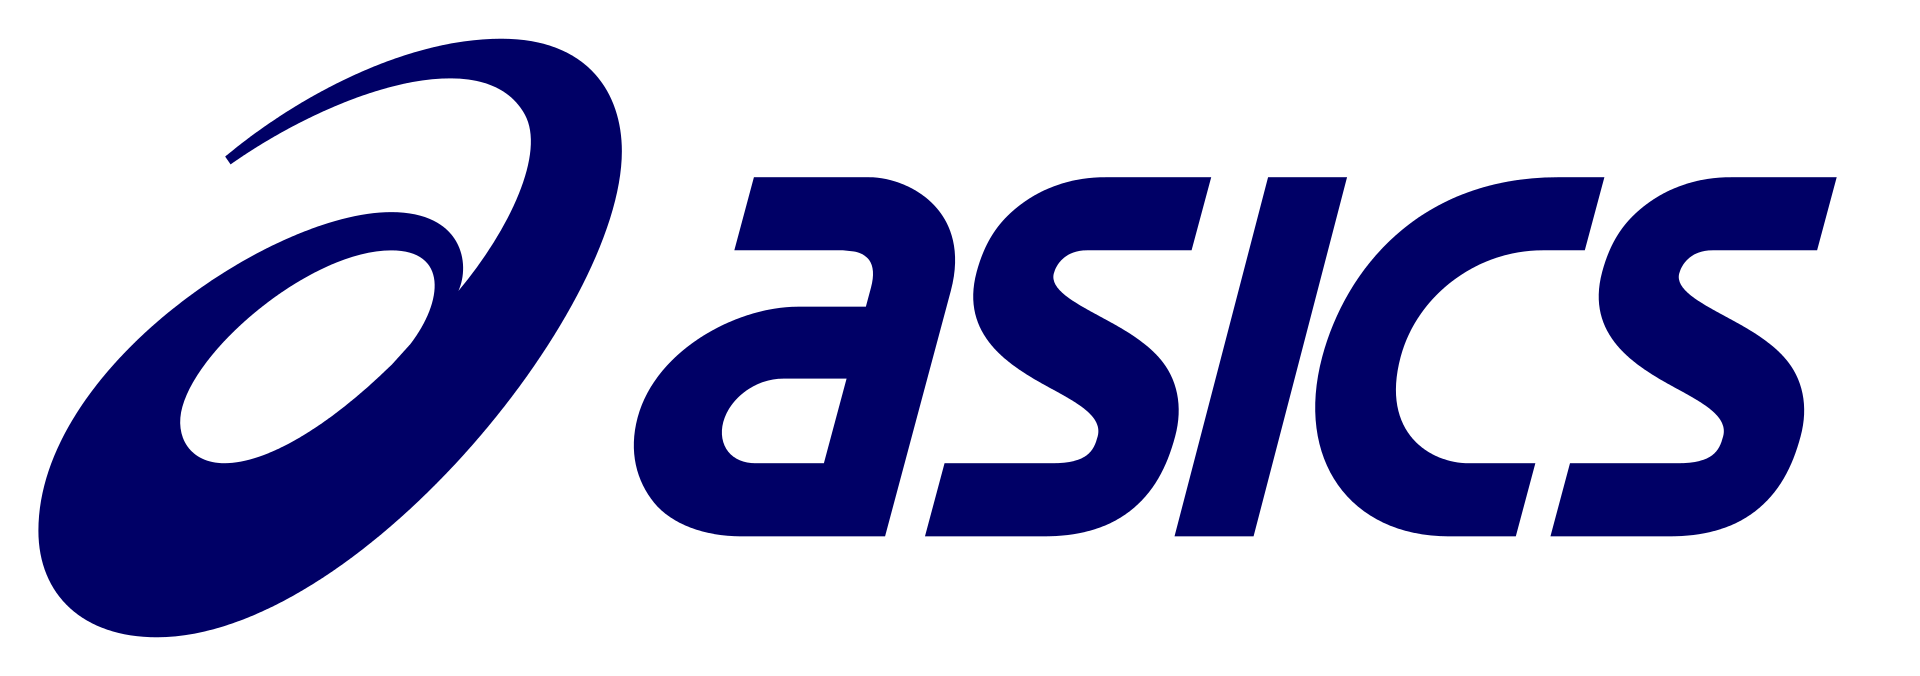 Asics logo blue